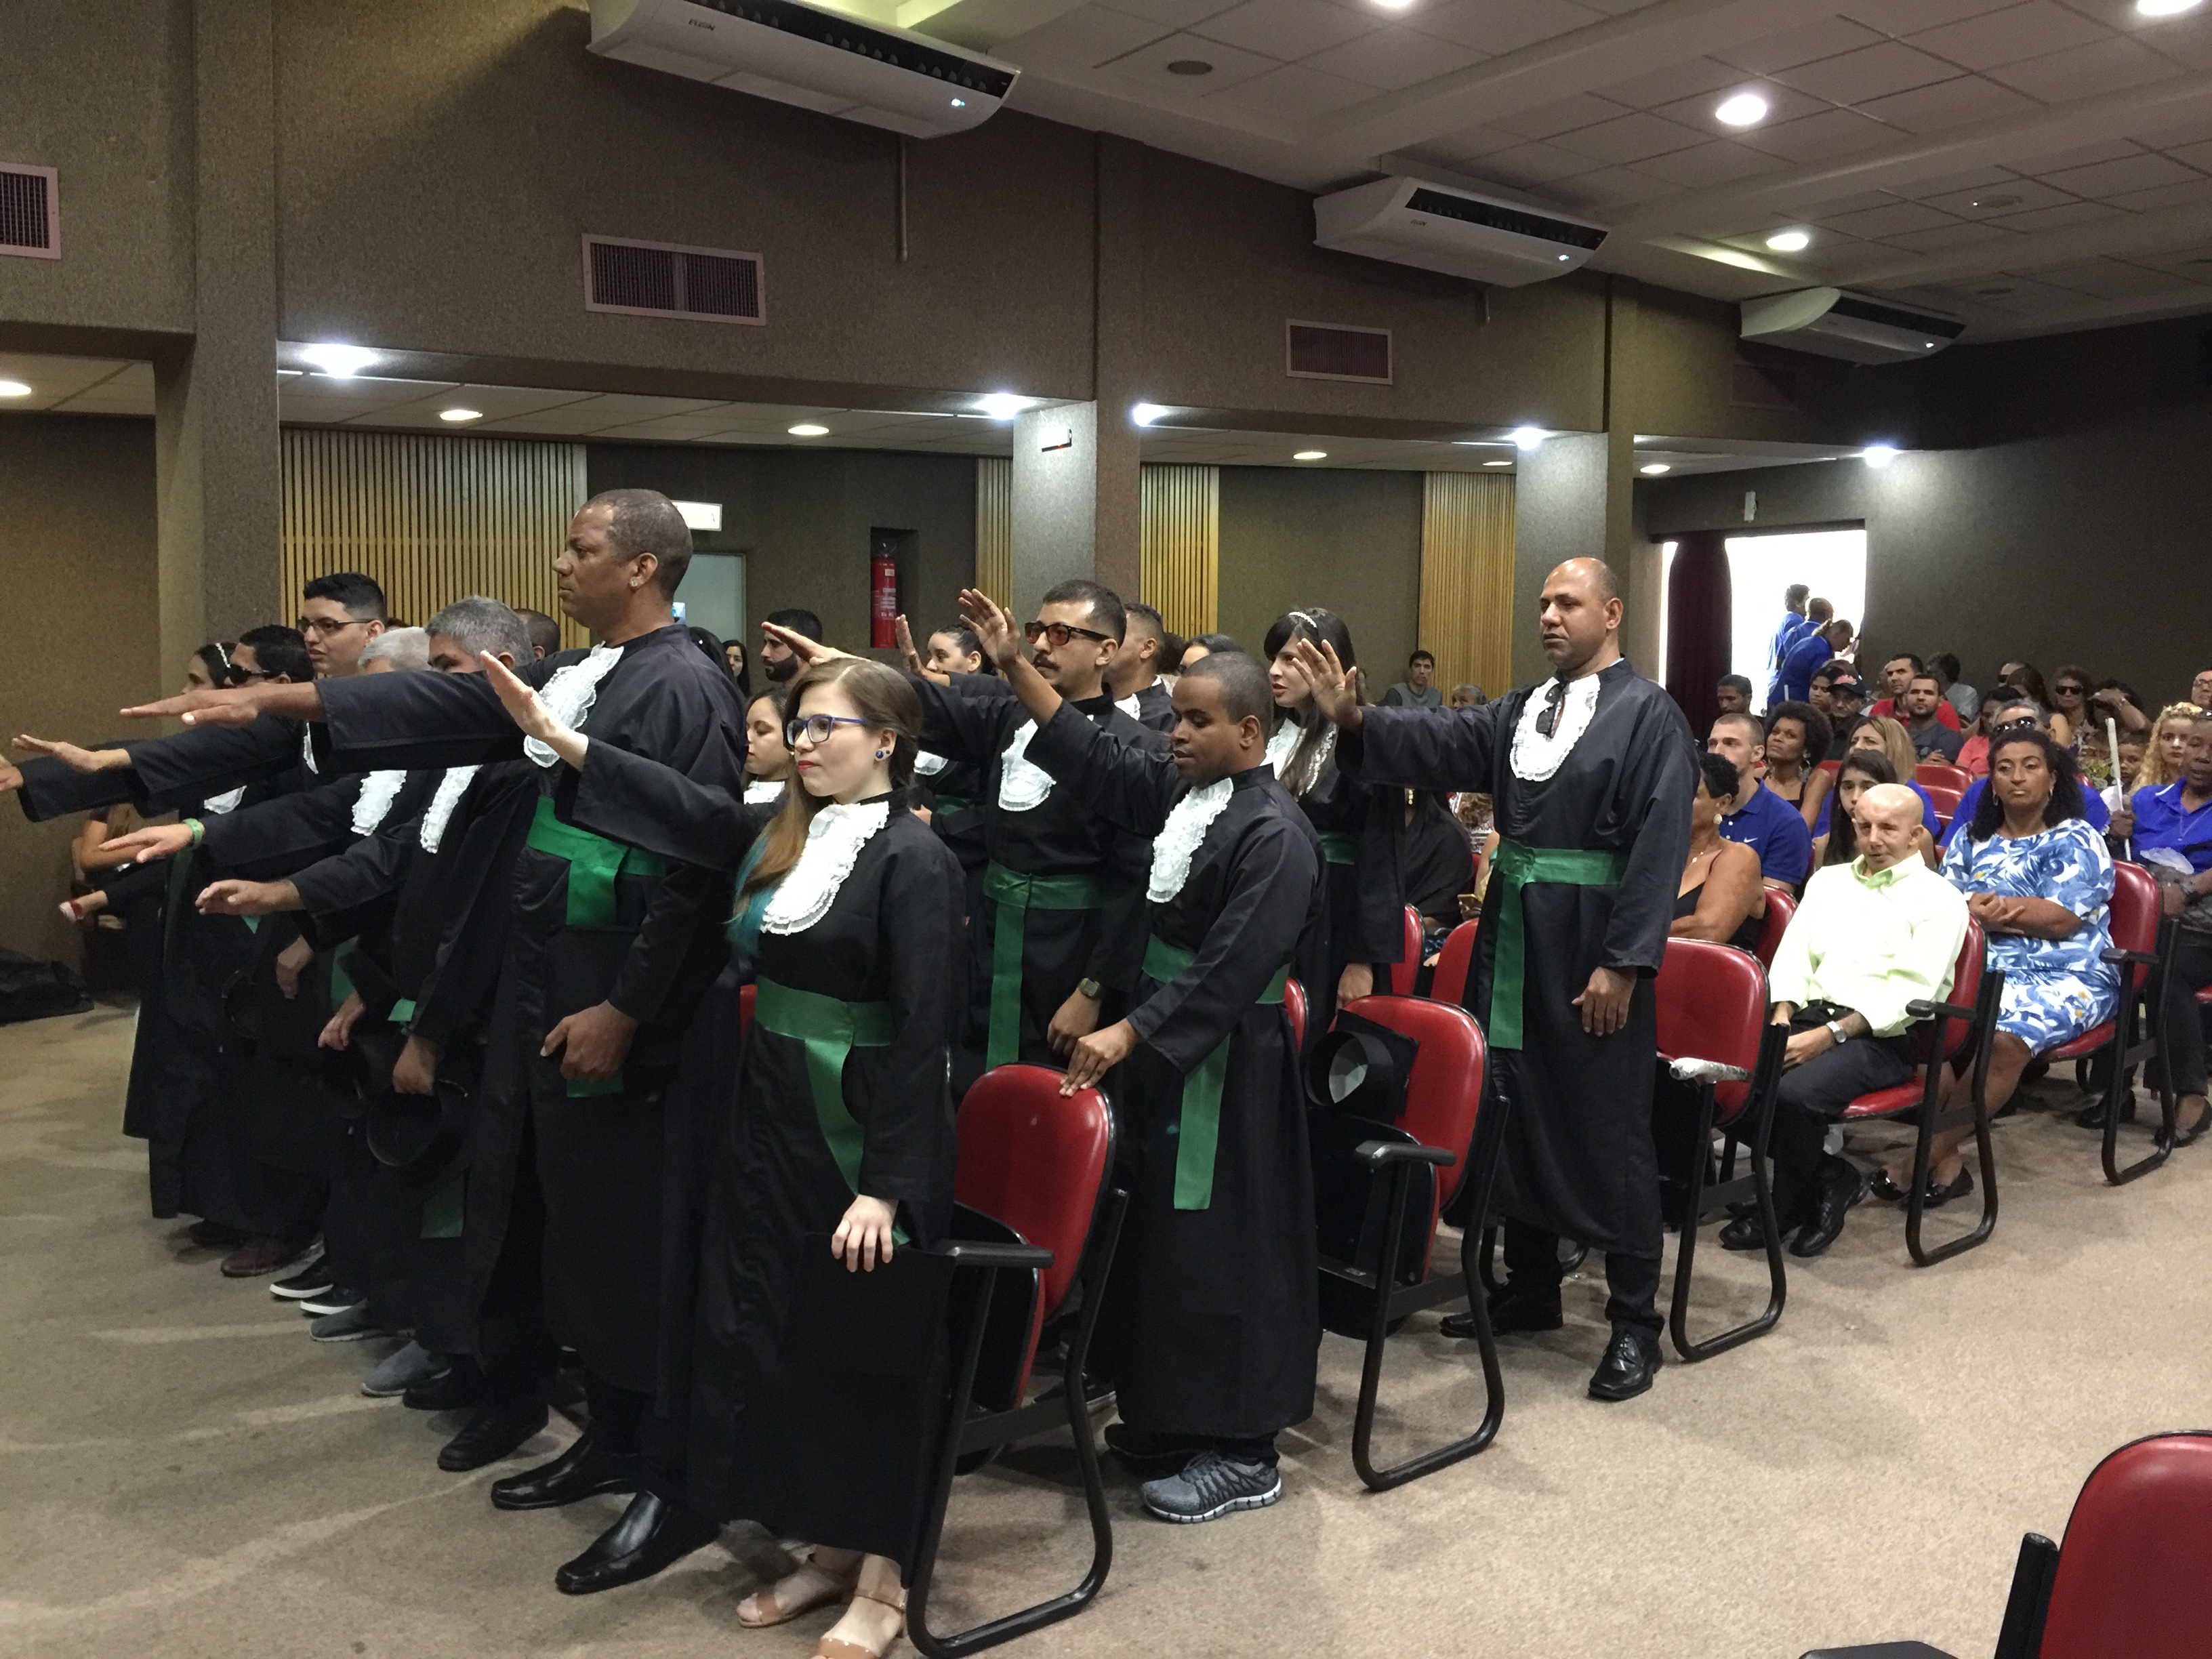 Homens e mulheres vestidos de beca preta, com faixa verde, com o braço direito erguido em posição de juramento.